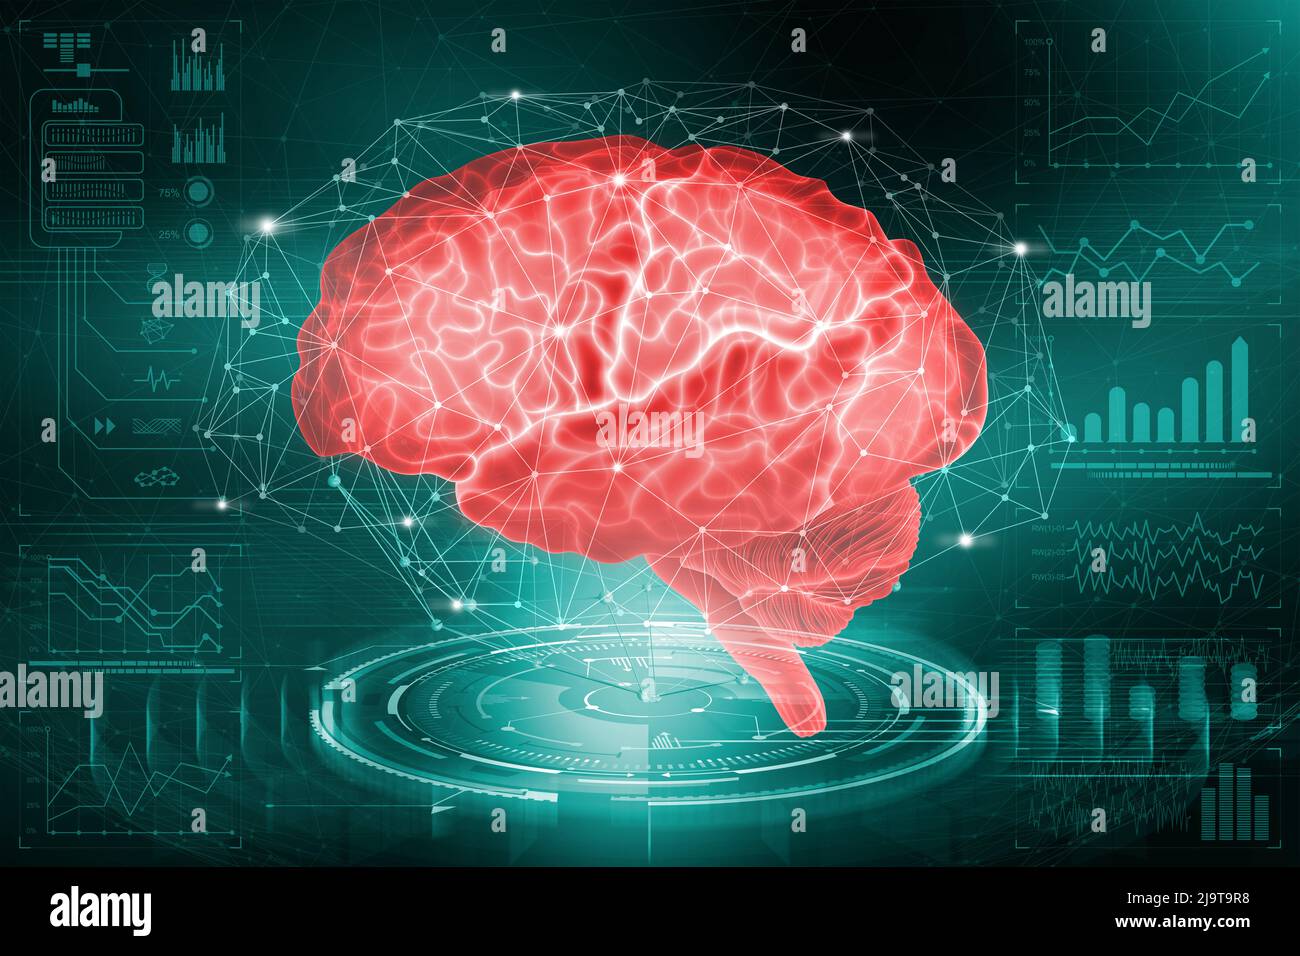 Das menschliche Gehirn. Die Untersuchung der Möglichkeiten des Gehirns bei der Entwicklung künstlicher Intelligenz. Analyse und Rekonstruktion des neuronalen Netzes Stockfoto